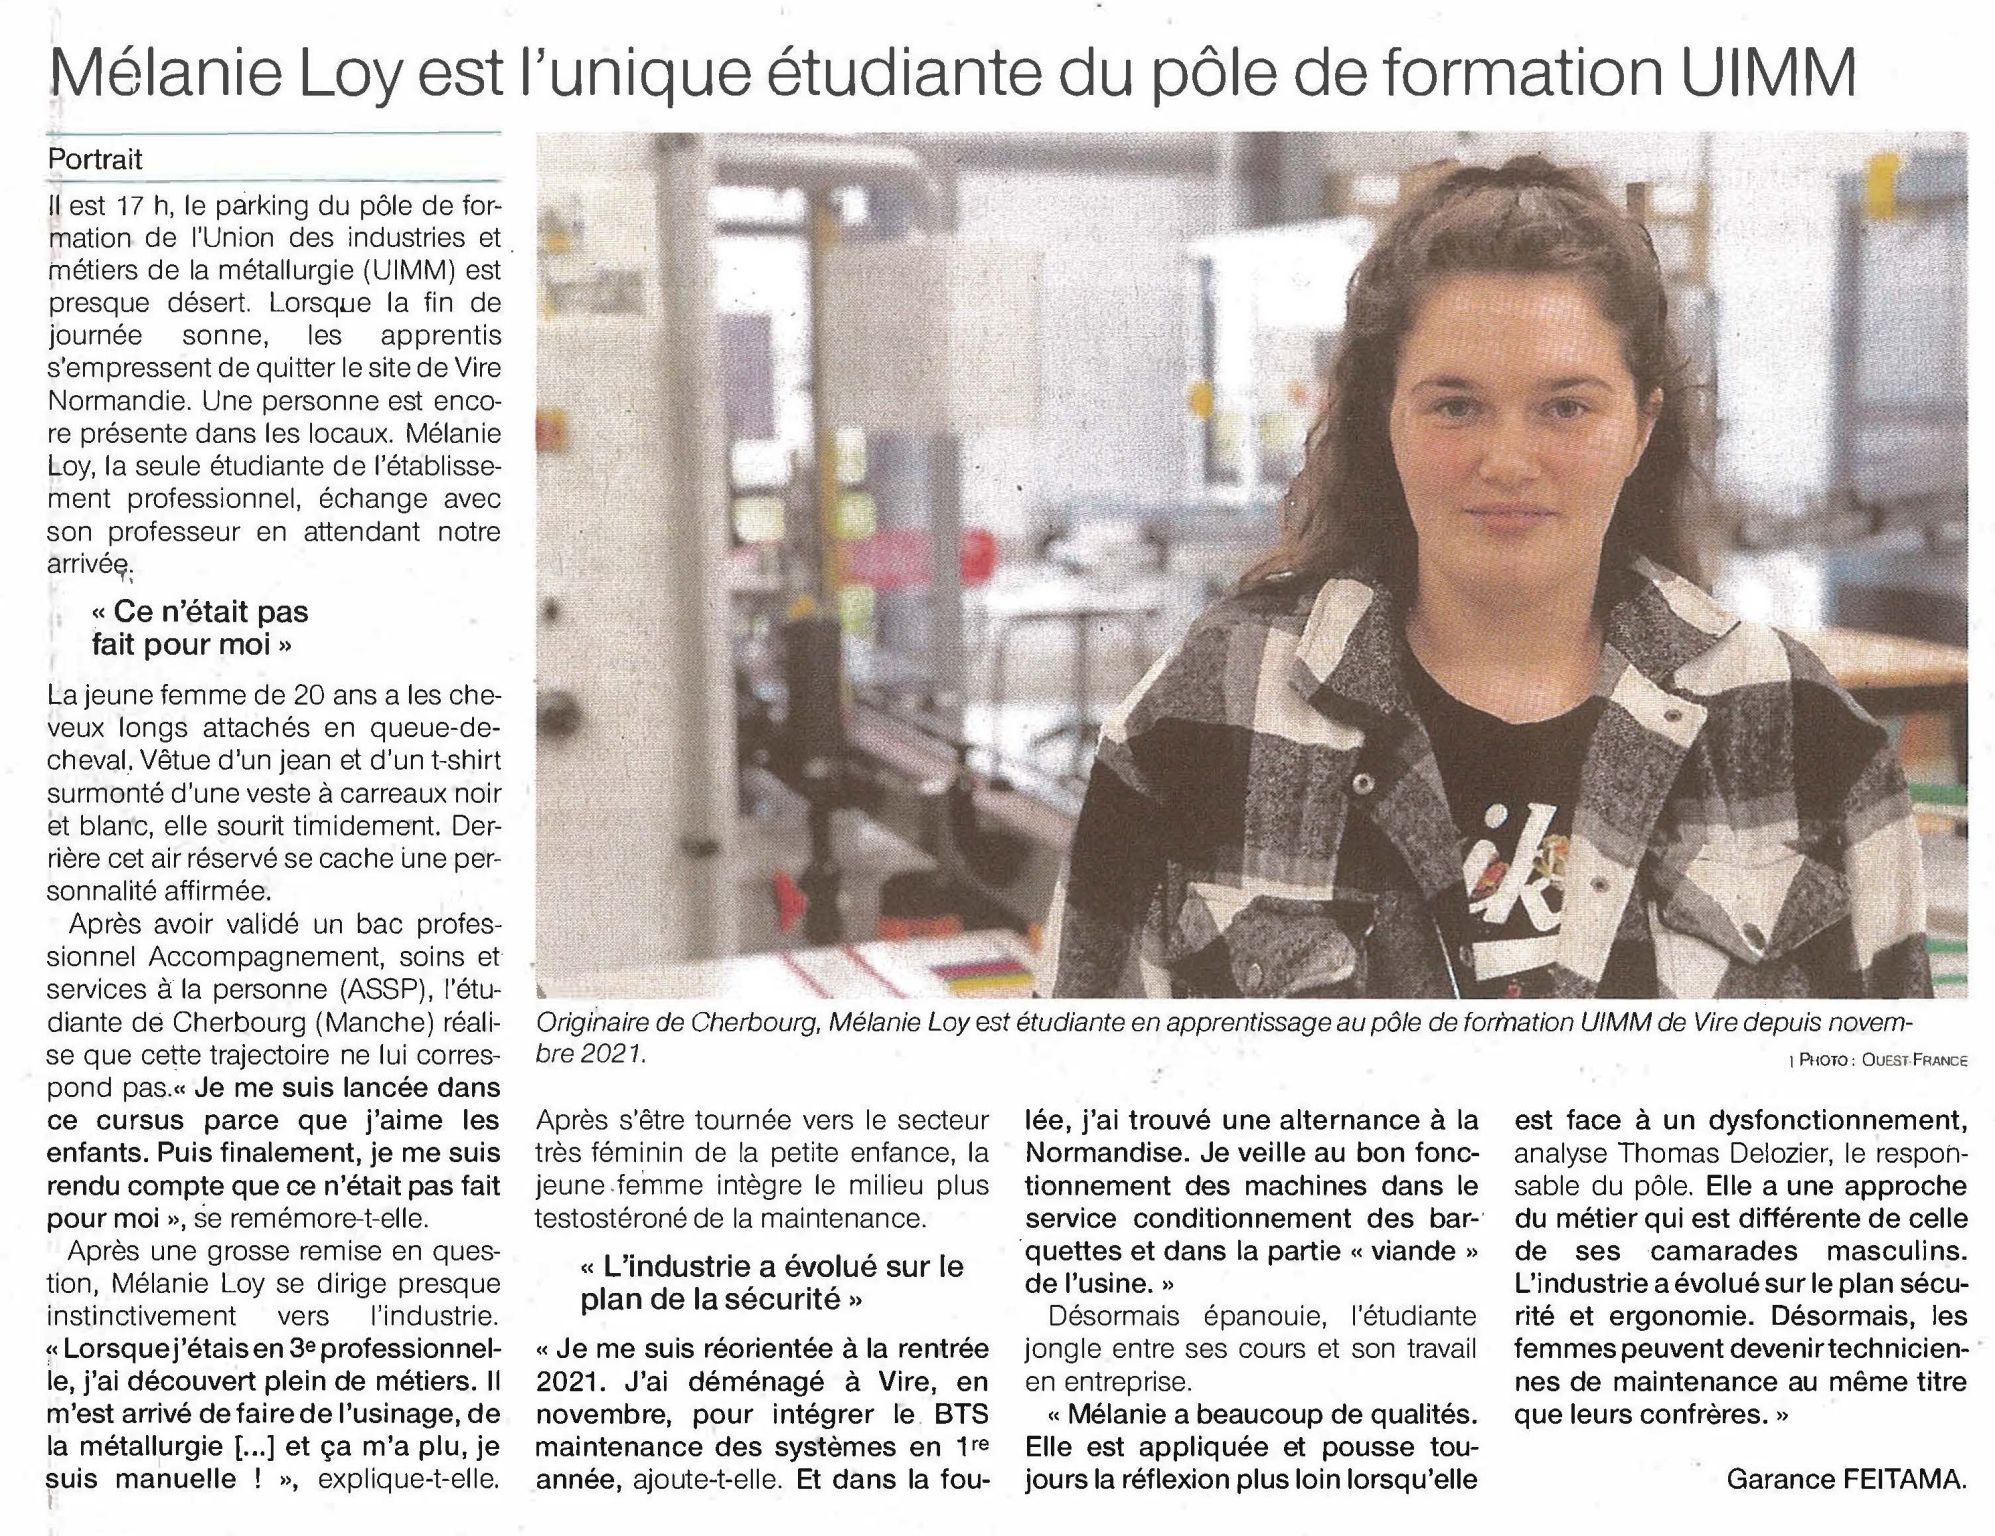 Ouest France : “Mélanie Loy, l’unique étudiante du pôle de formation UIMM”